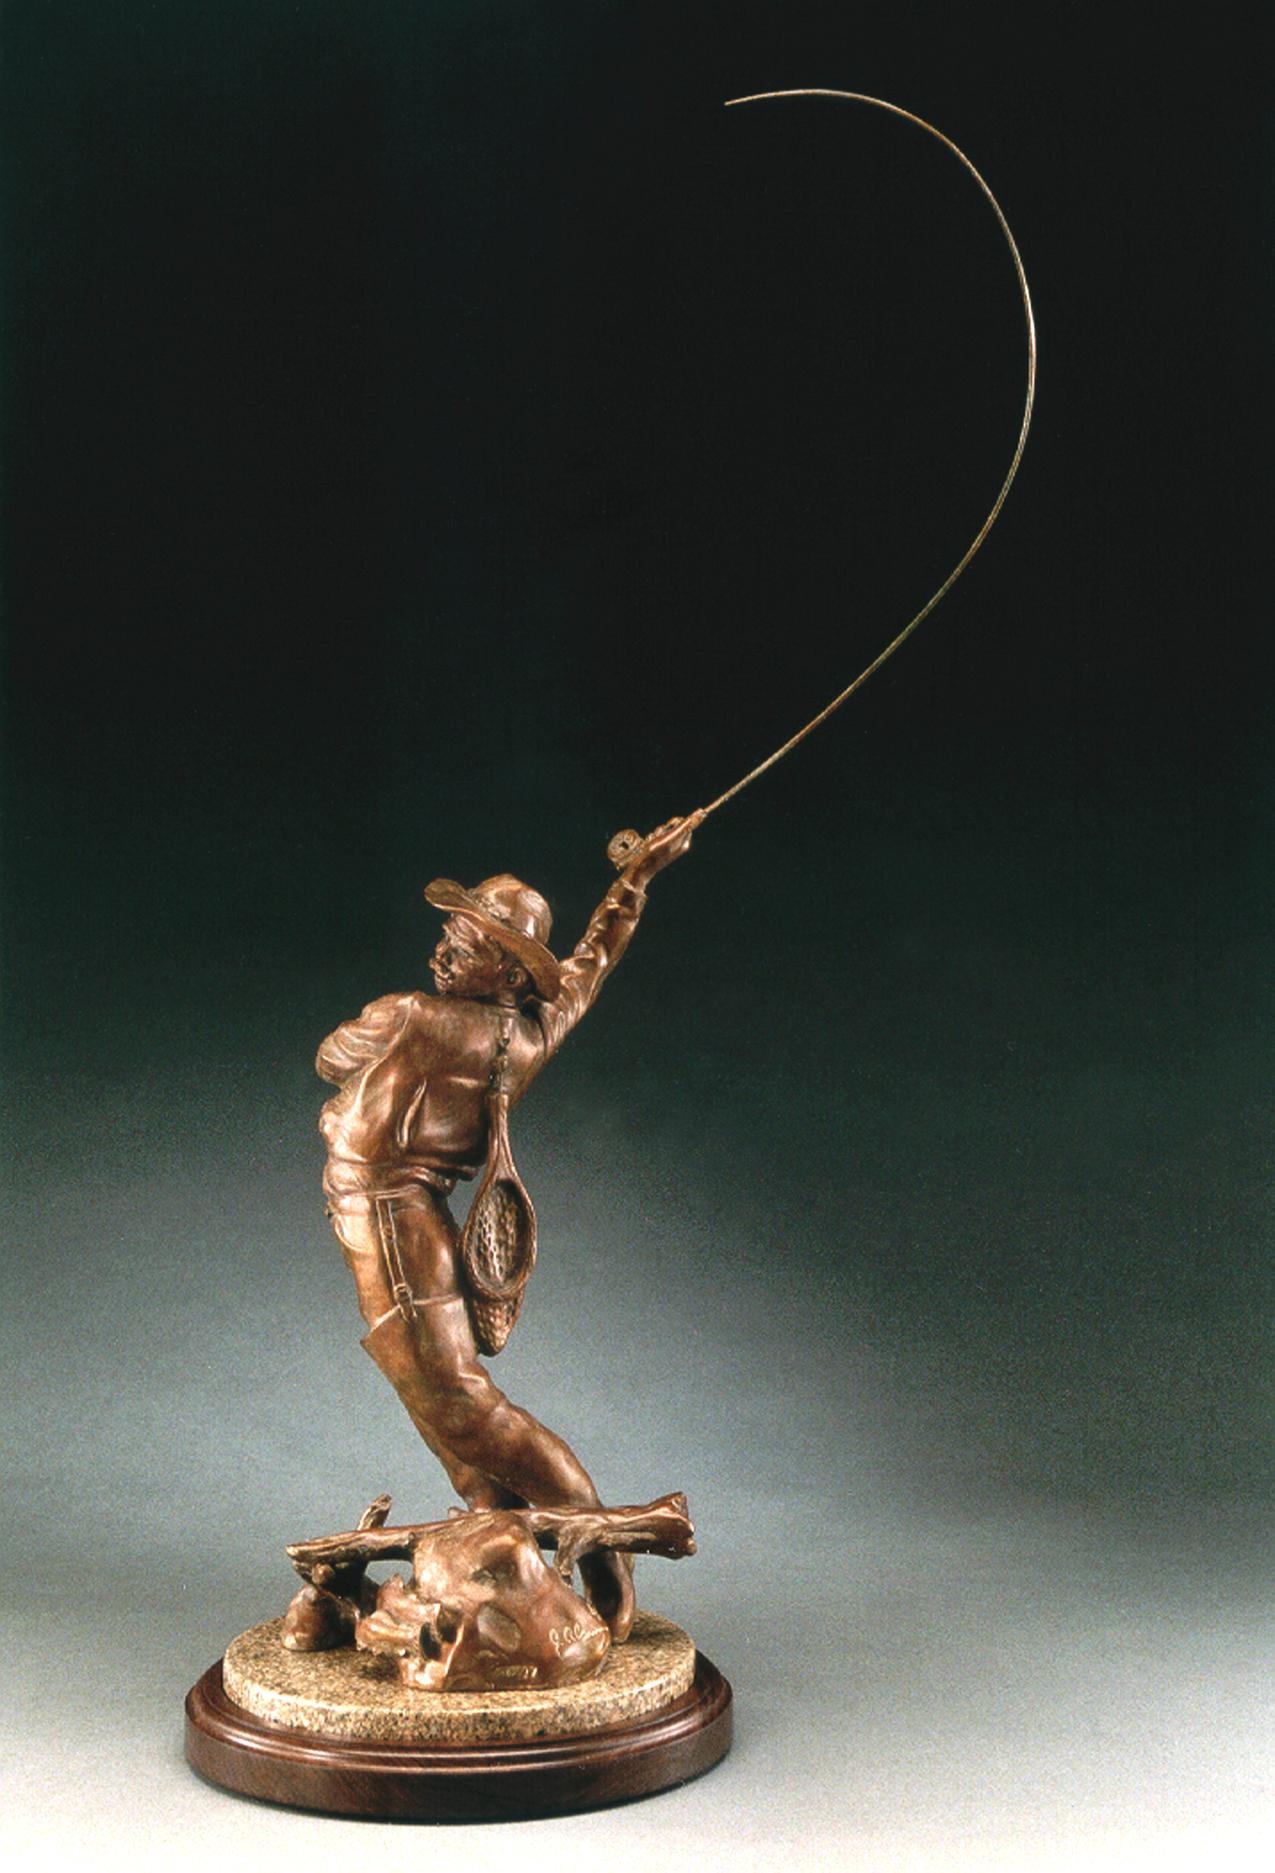 Gary Alsum Figurative Sculpture - Hit and Run